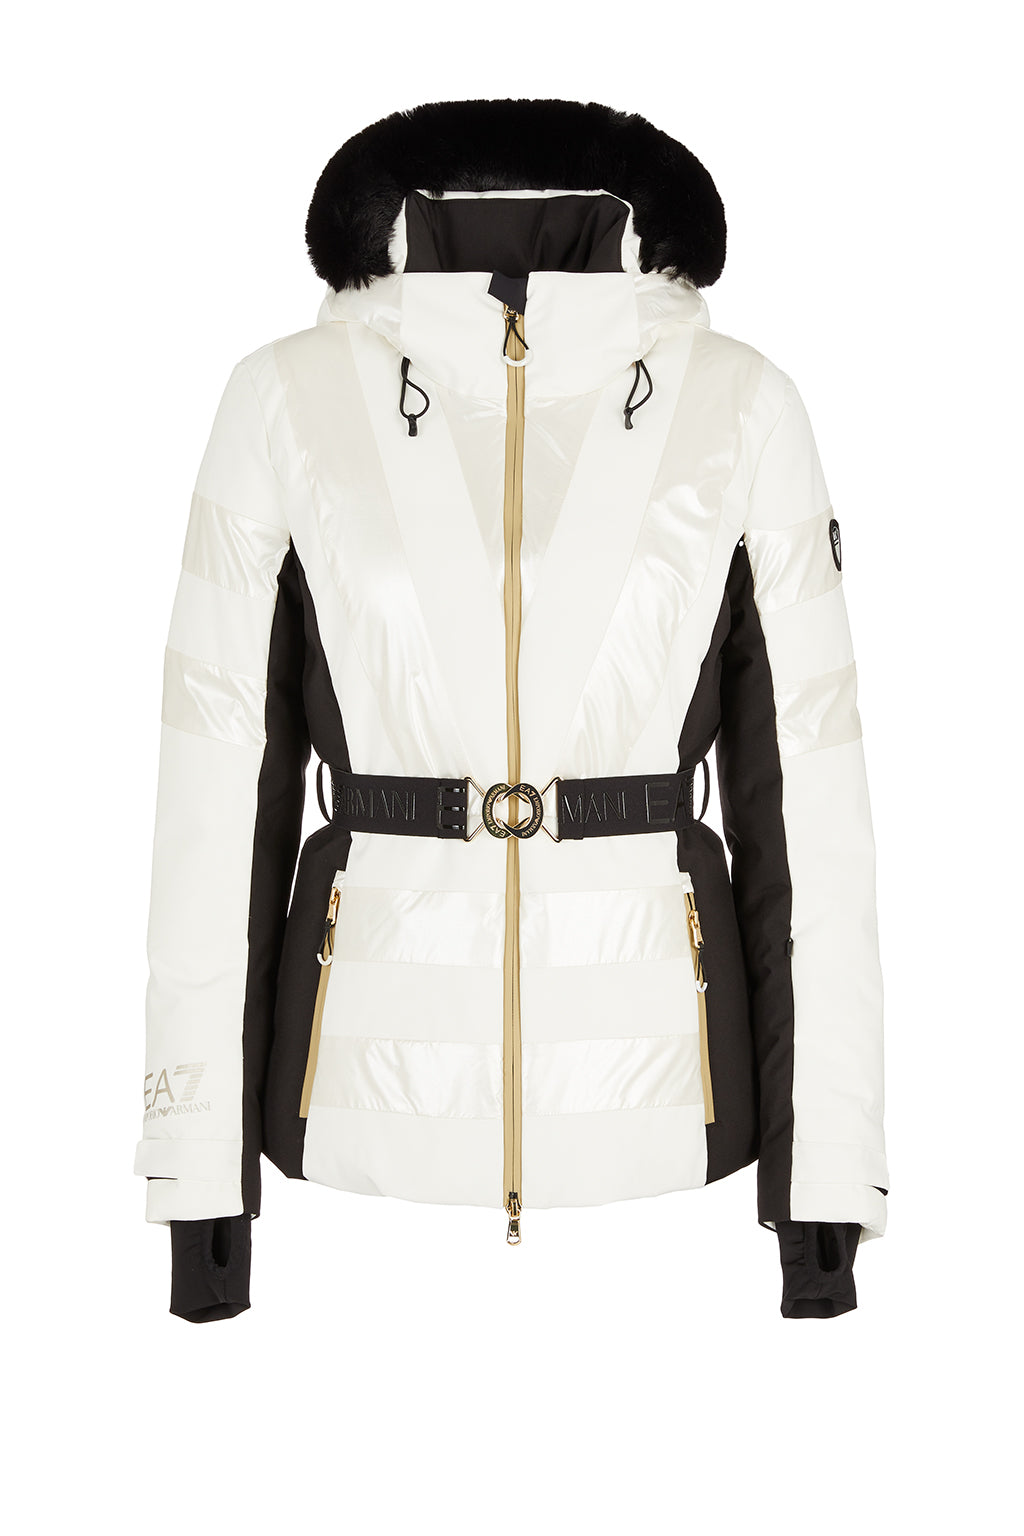 Womens Ski Branded Bomber Jacket